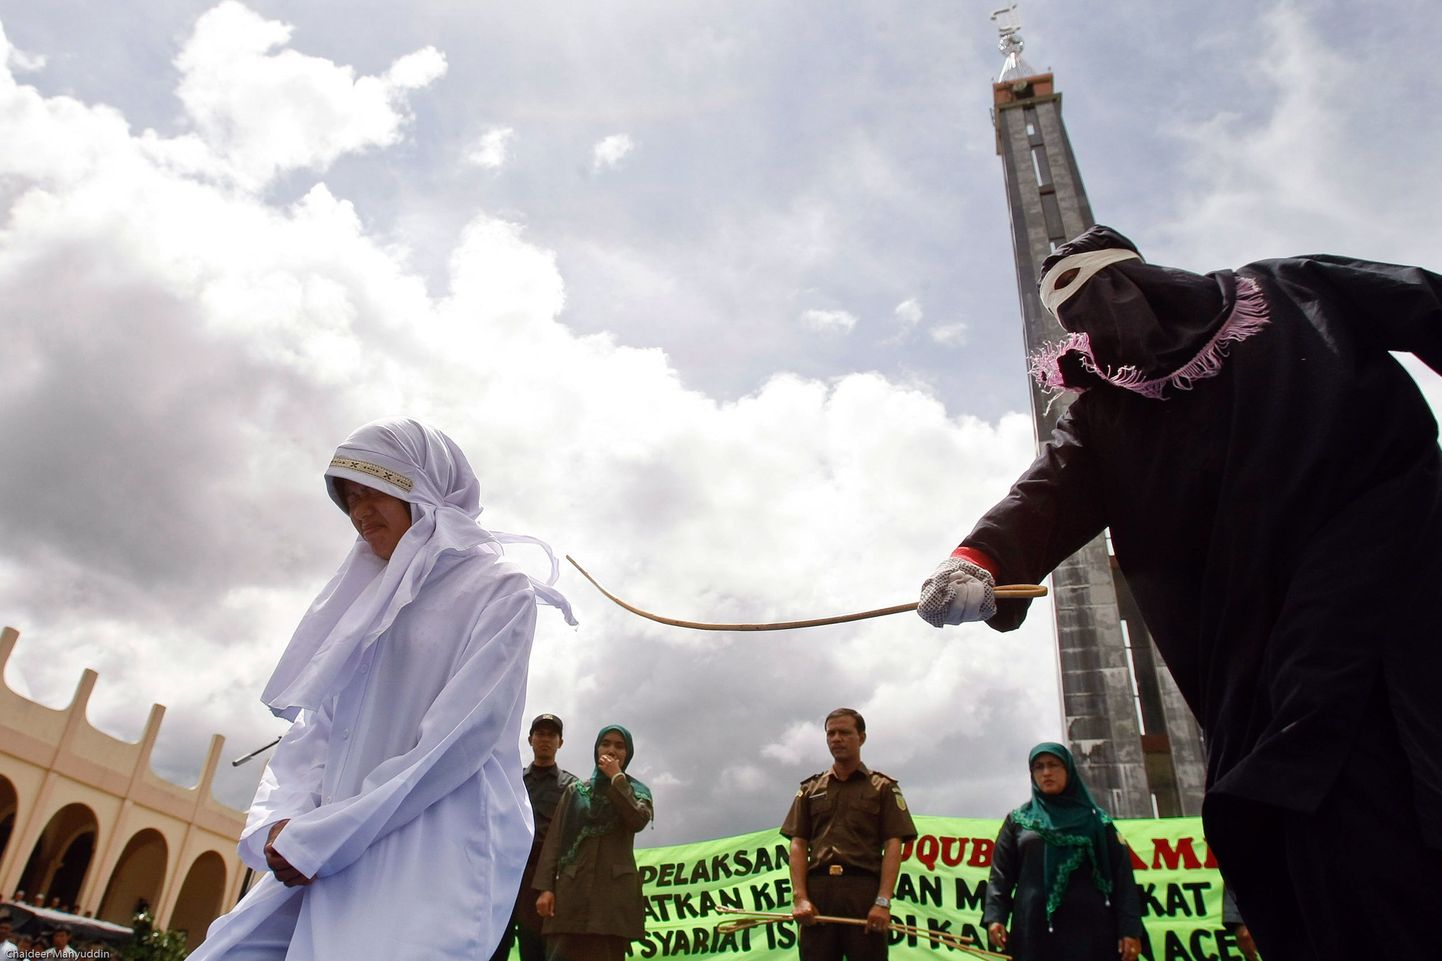 Illustratiivsel pildil viiakse šariaadiseaduste järgi määratud karistust täide Indoneesias.